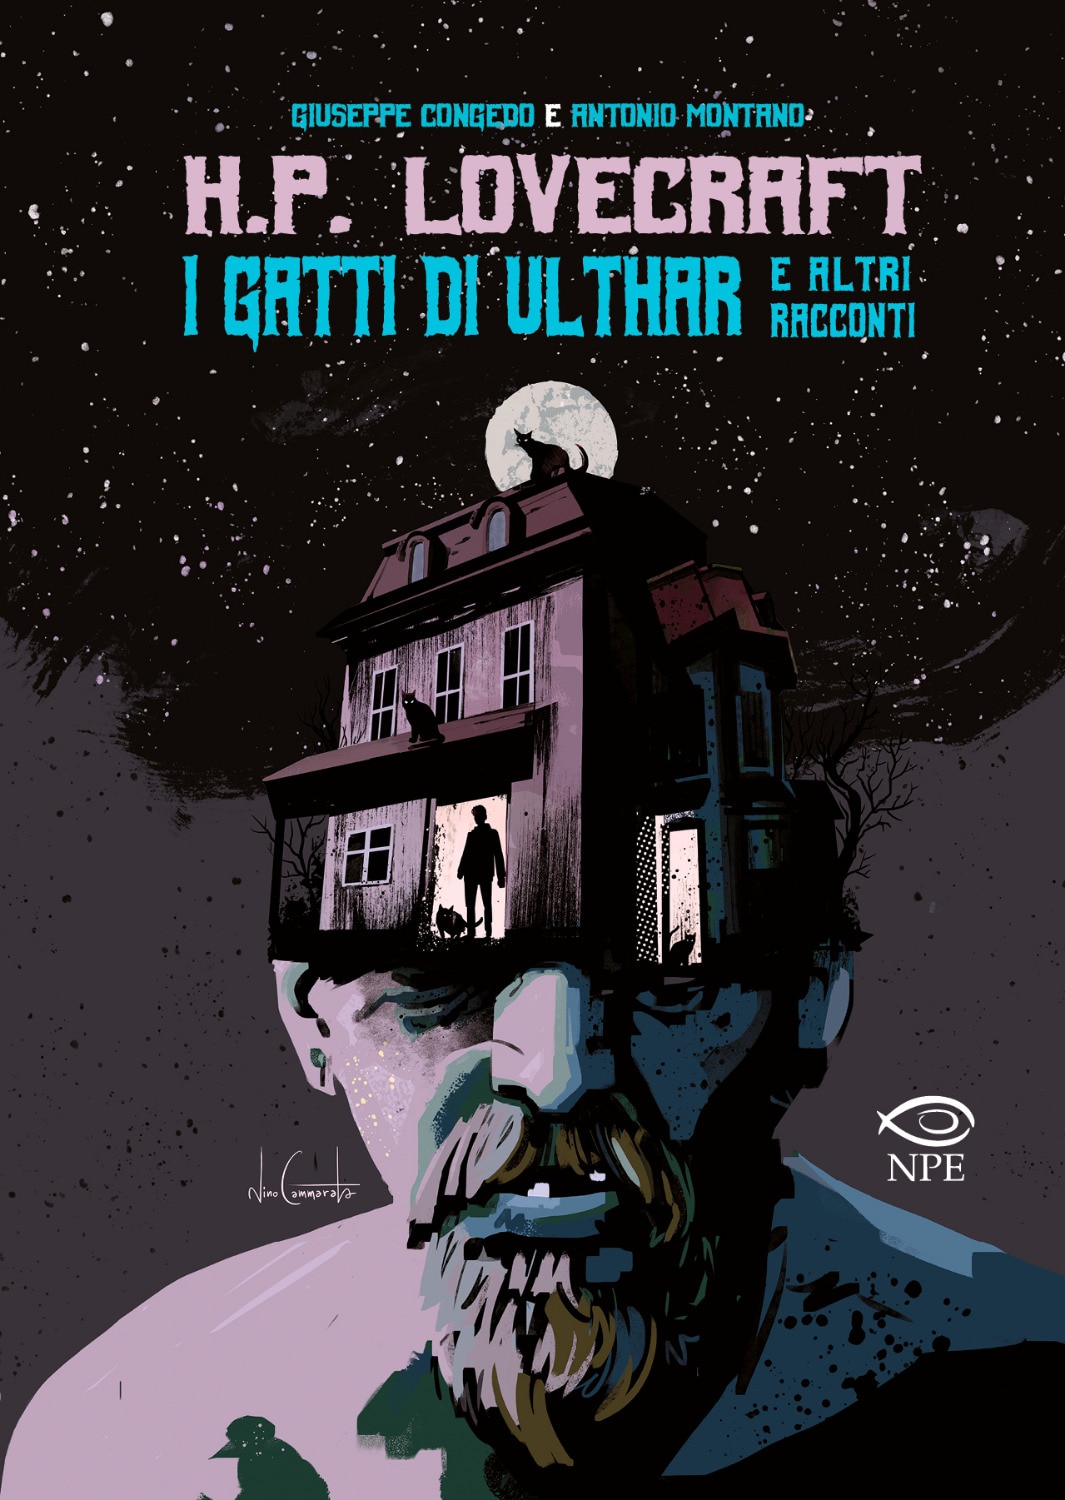  "I gatti di Ulthar e altri racconti" di H.P. Lovecraft, Giuseppe Congedo e Antonio Montano (Edizioni NPE)